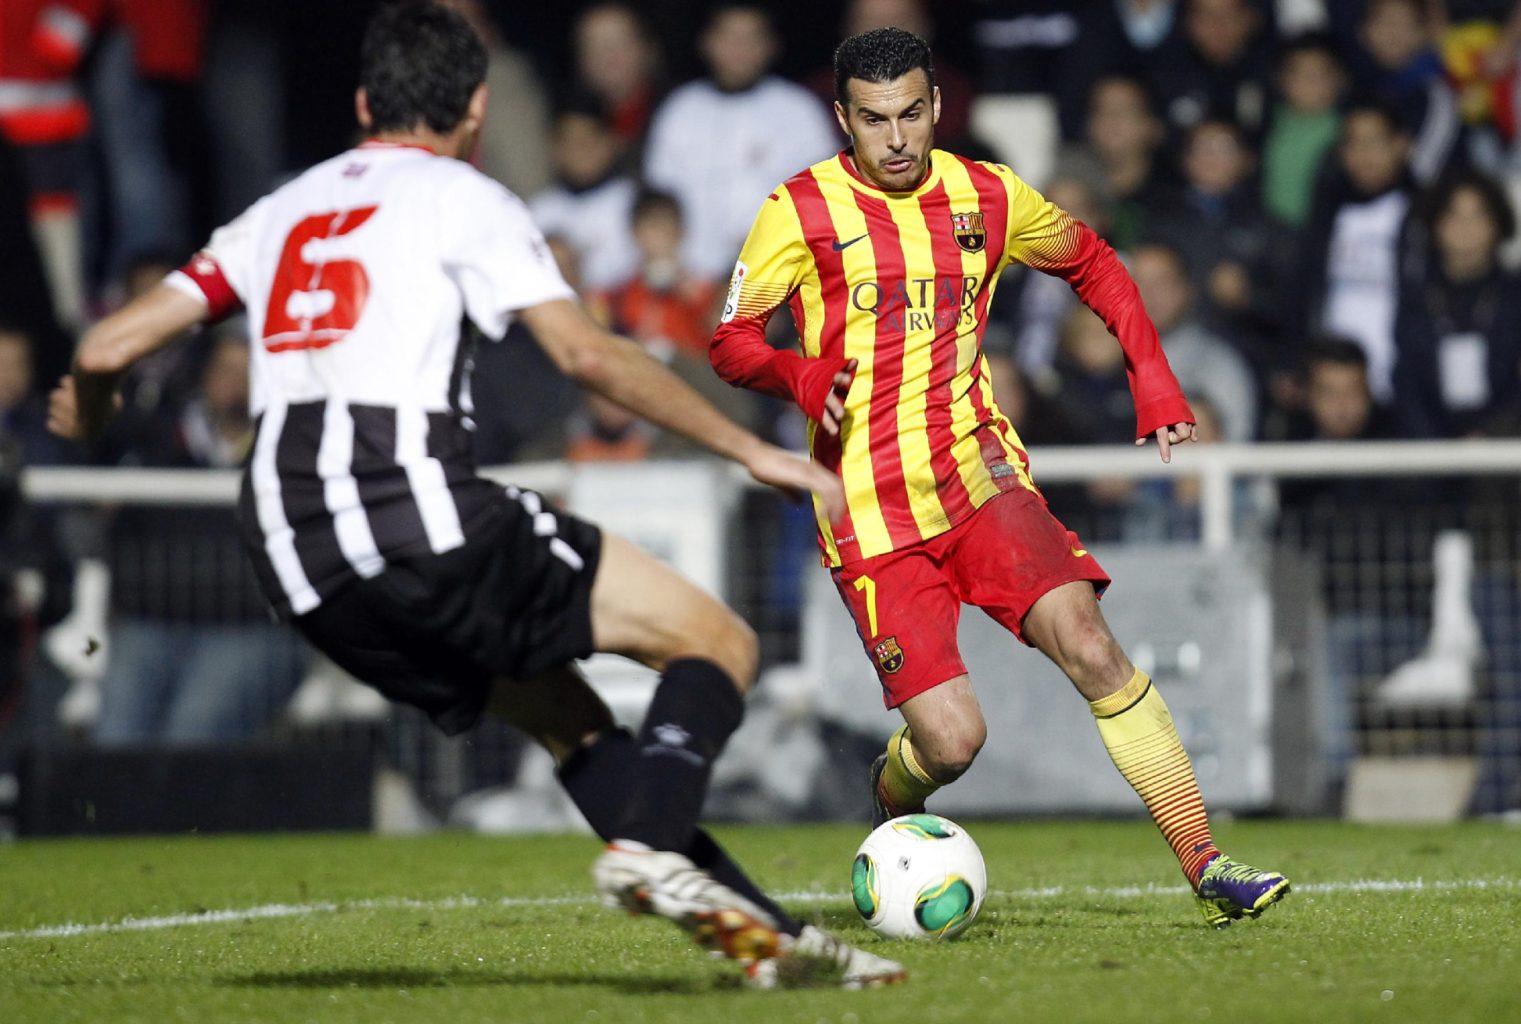 Pedro in action, in Cartagena vs Barcelona